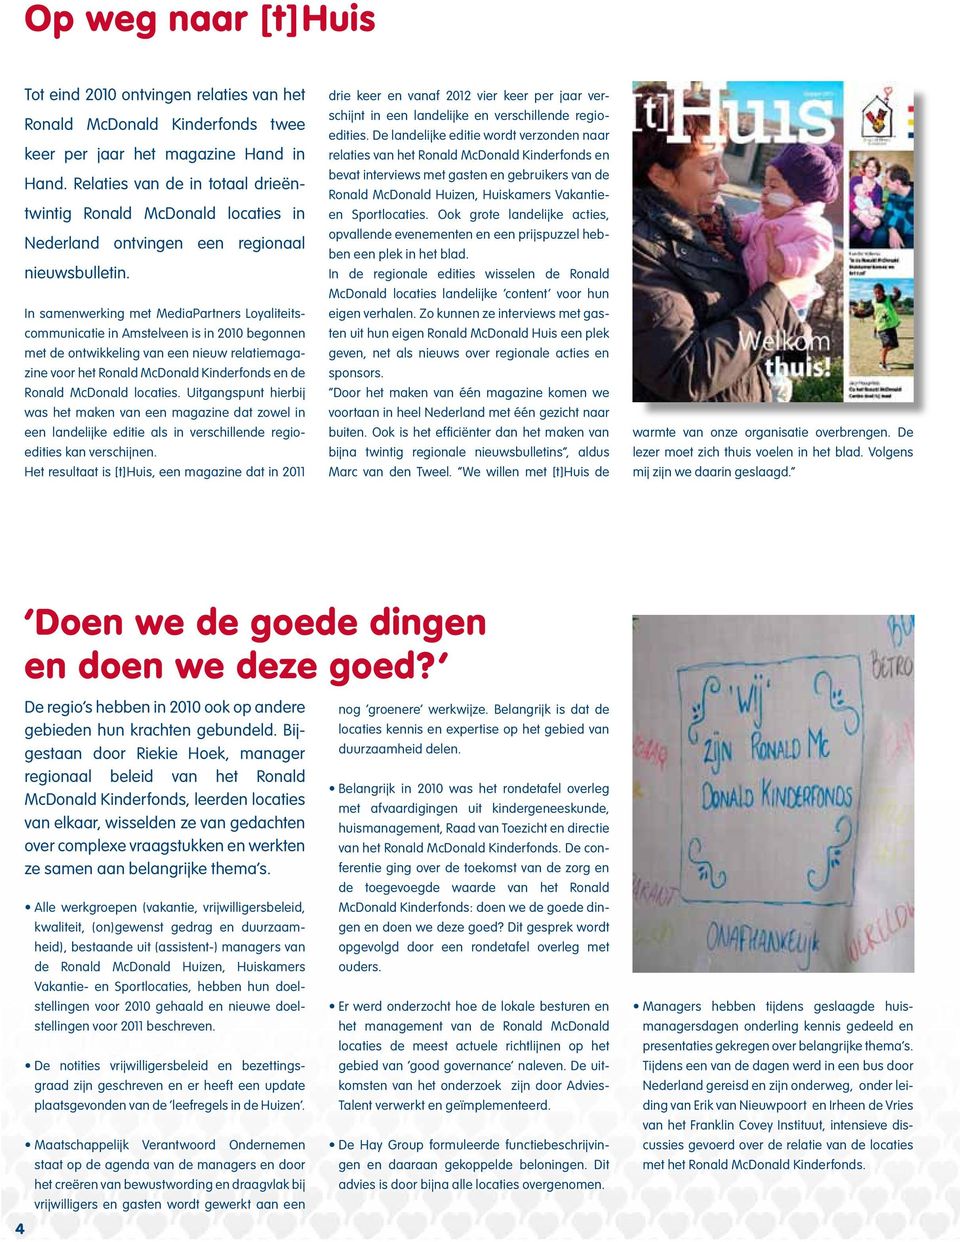 In samenwerking met MediaPartners Loyaliteitscommunicatie in Amstelveen is in begonnen met de ontwikkeling van een nieuw relatiemagazine voor het Ronald McDonald Kinderfonds en de Ronald McDonald